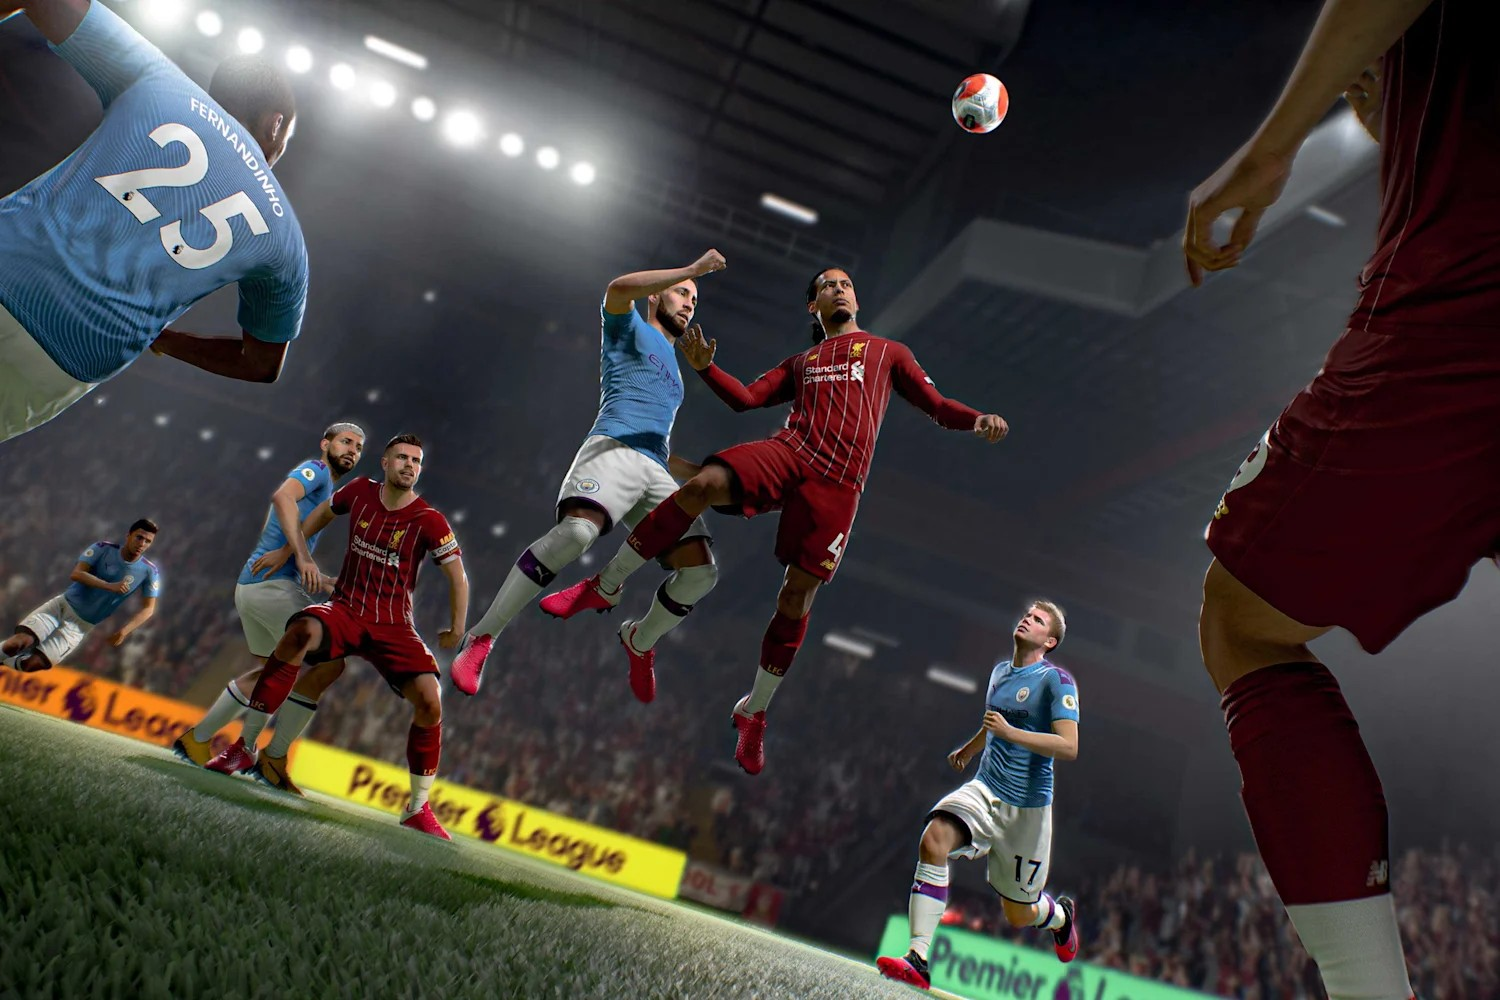 Steam fifa 22 Buy FIFA